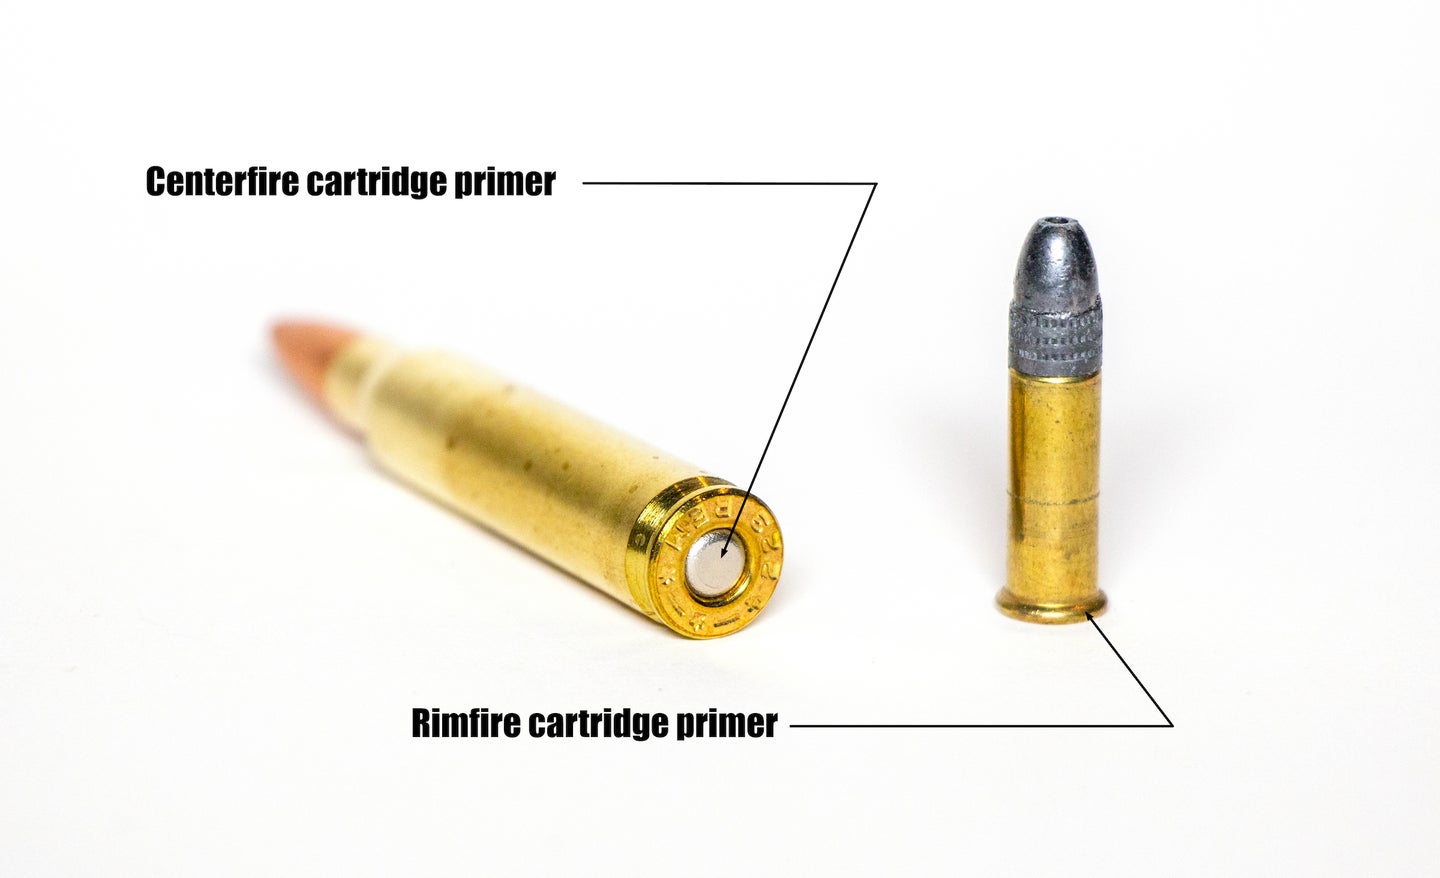 Rimfire vs centerfire ammo.